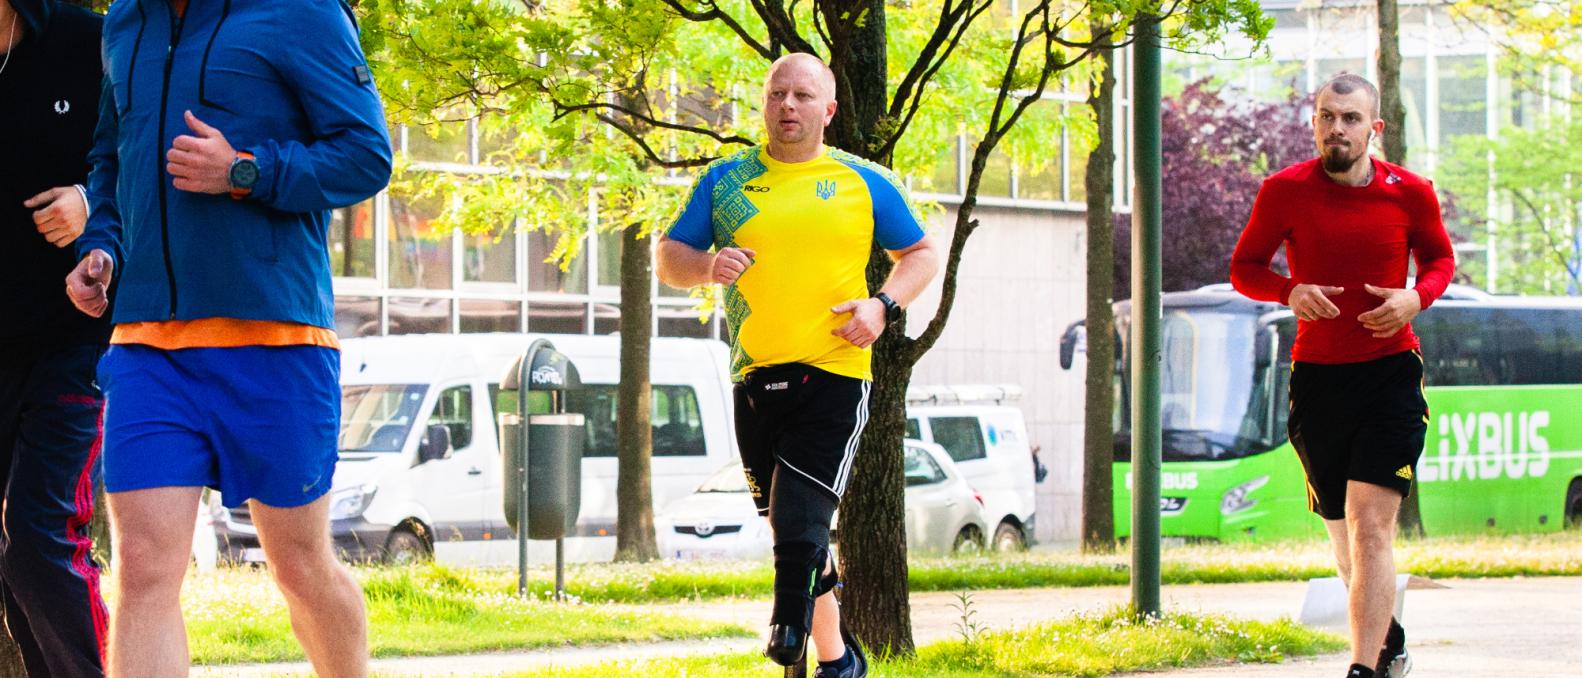 Three Ukraine athlete war veterans warm up for running.